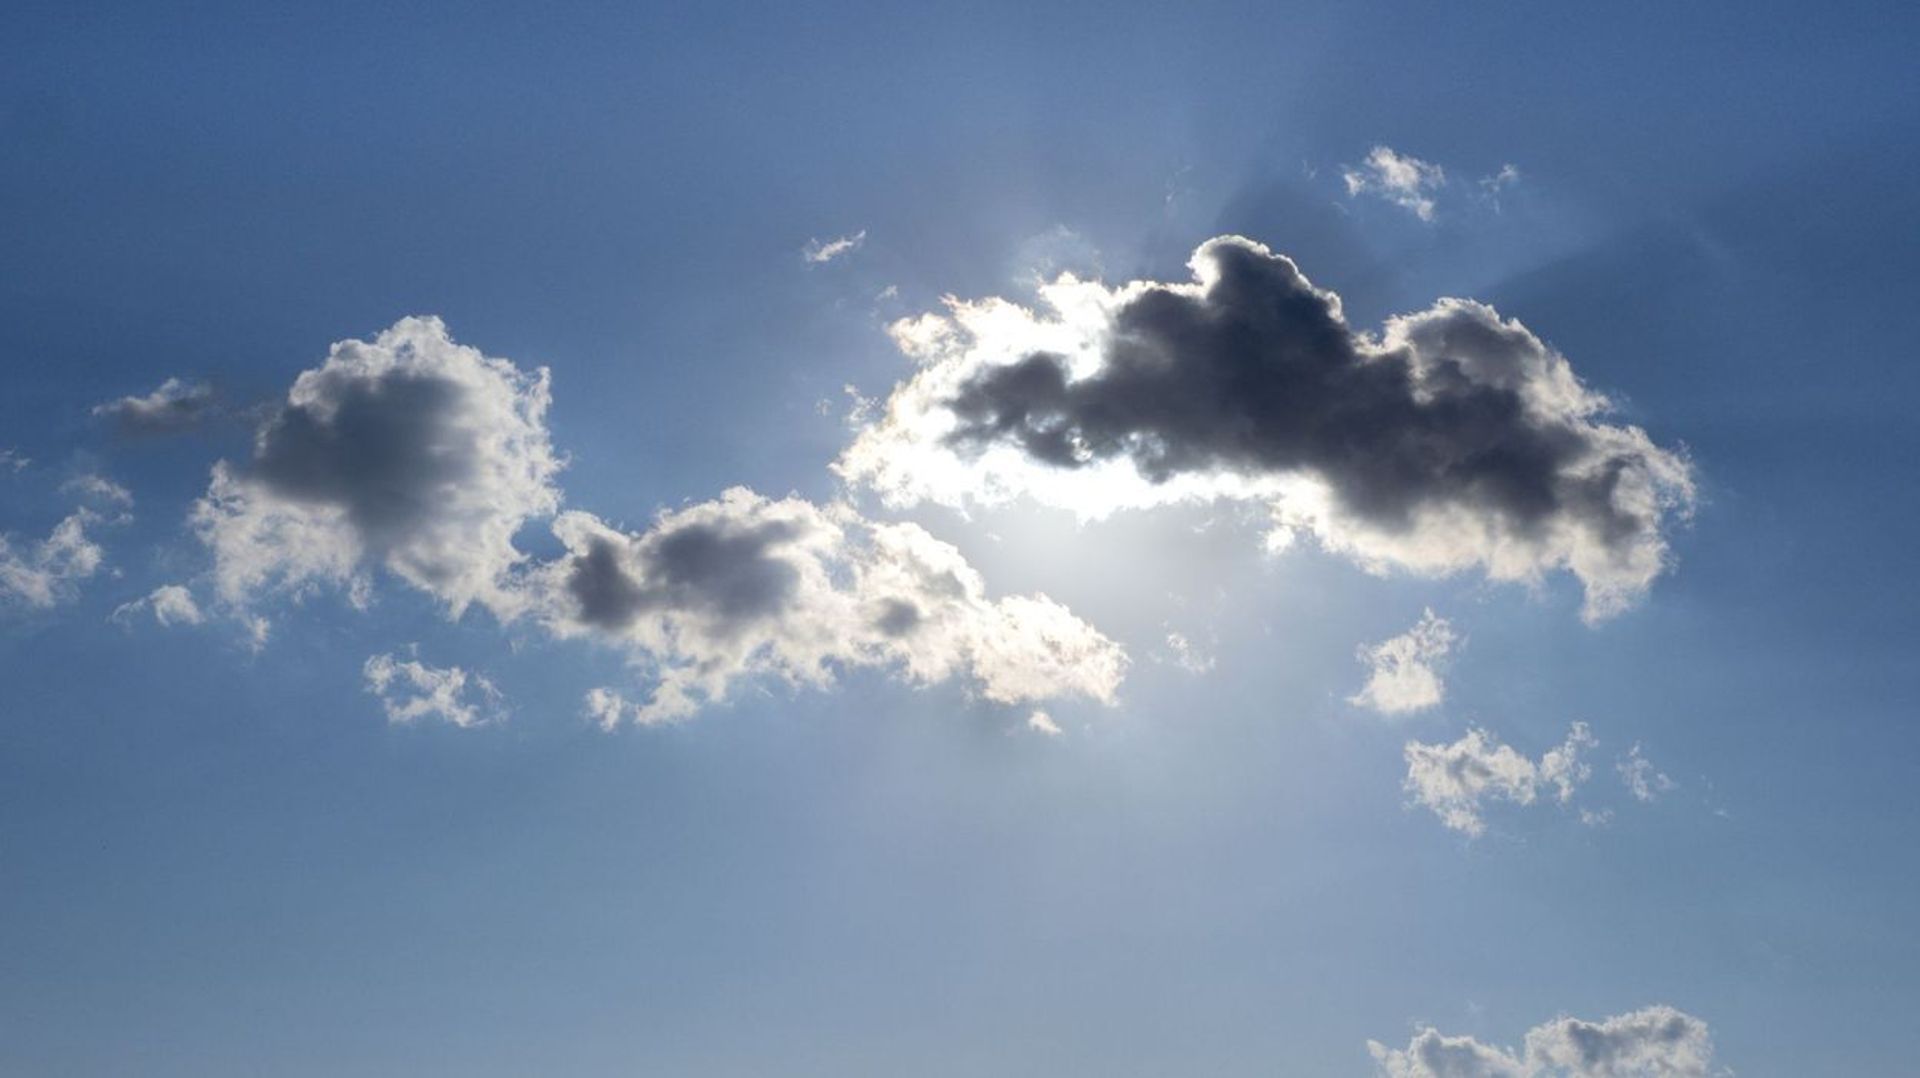 Météo de ce dimanche : des nuages, un peu frais avant le retour de fortes chaleurs en fin de semaine